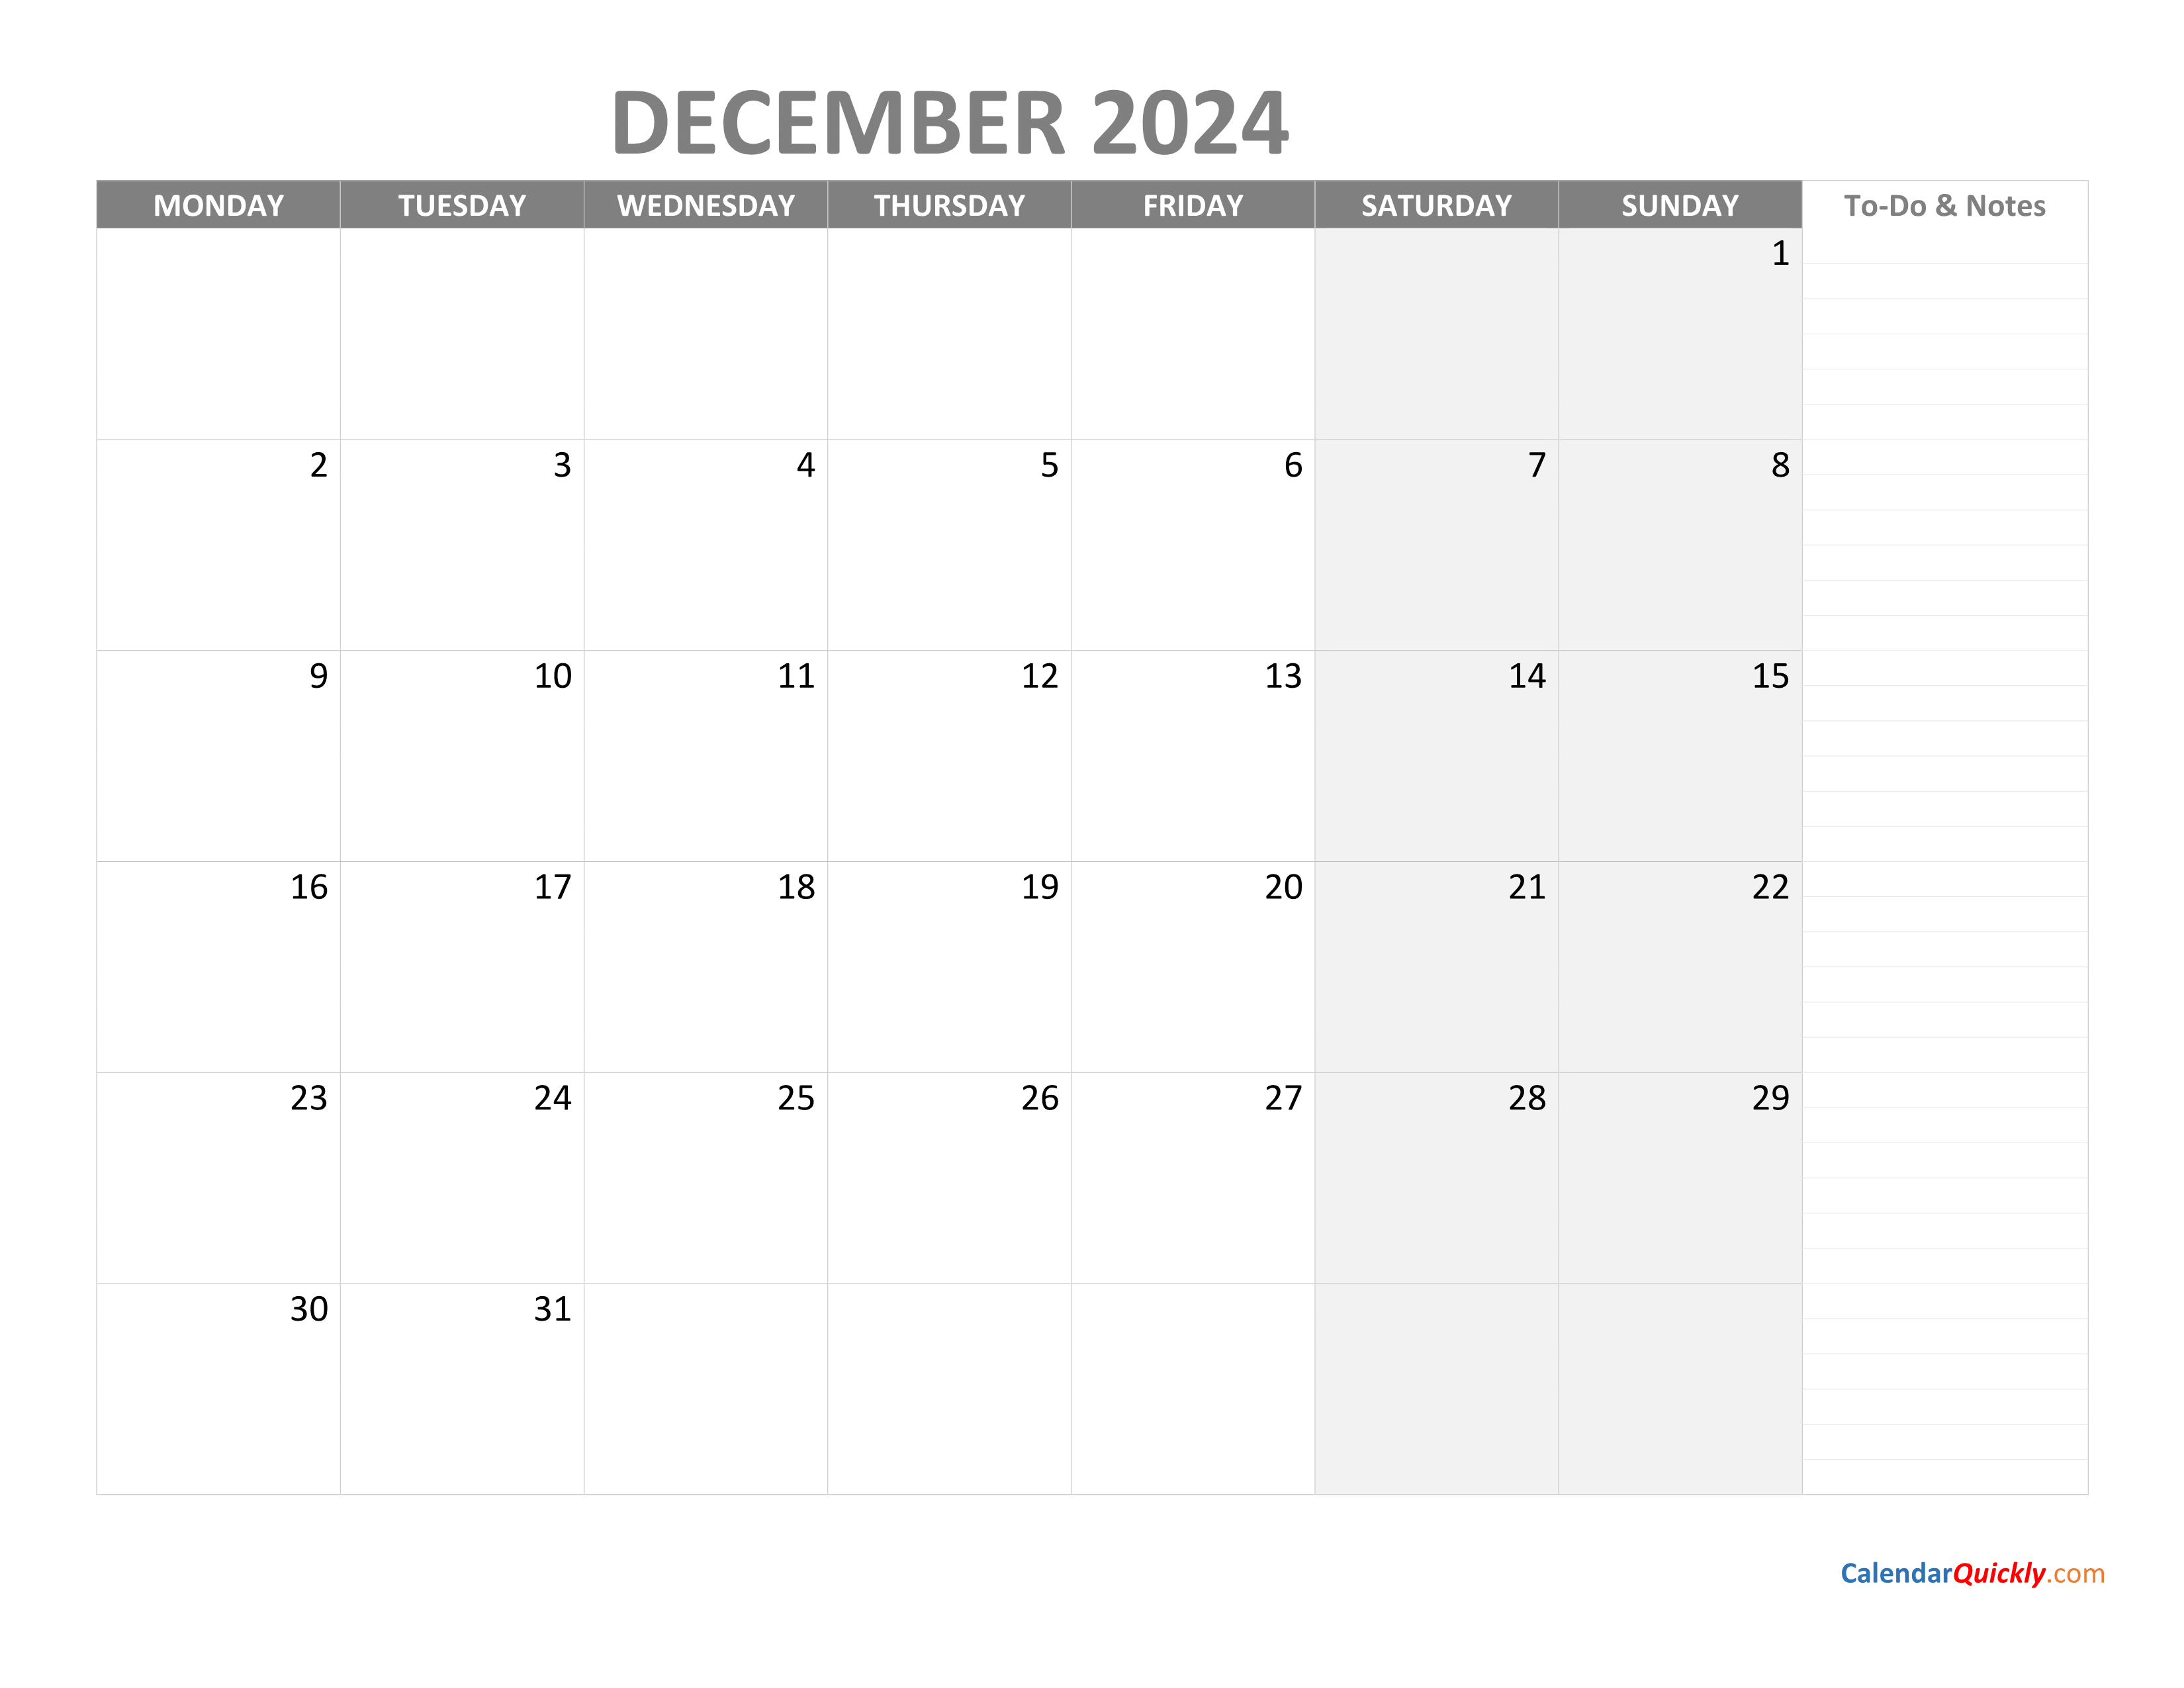 December Monday Calendar 2024 with Notes Calendar Quickly